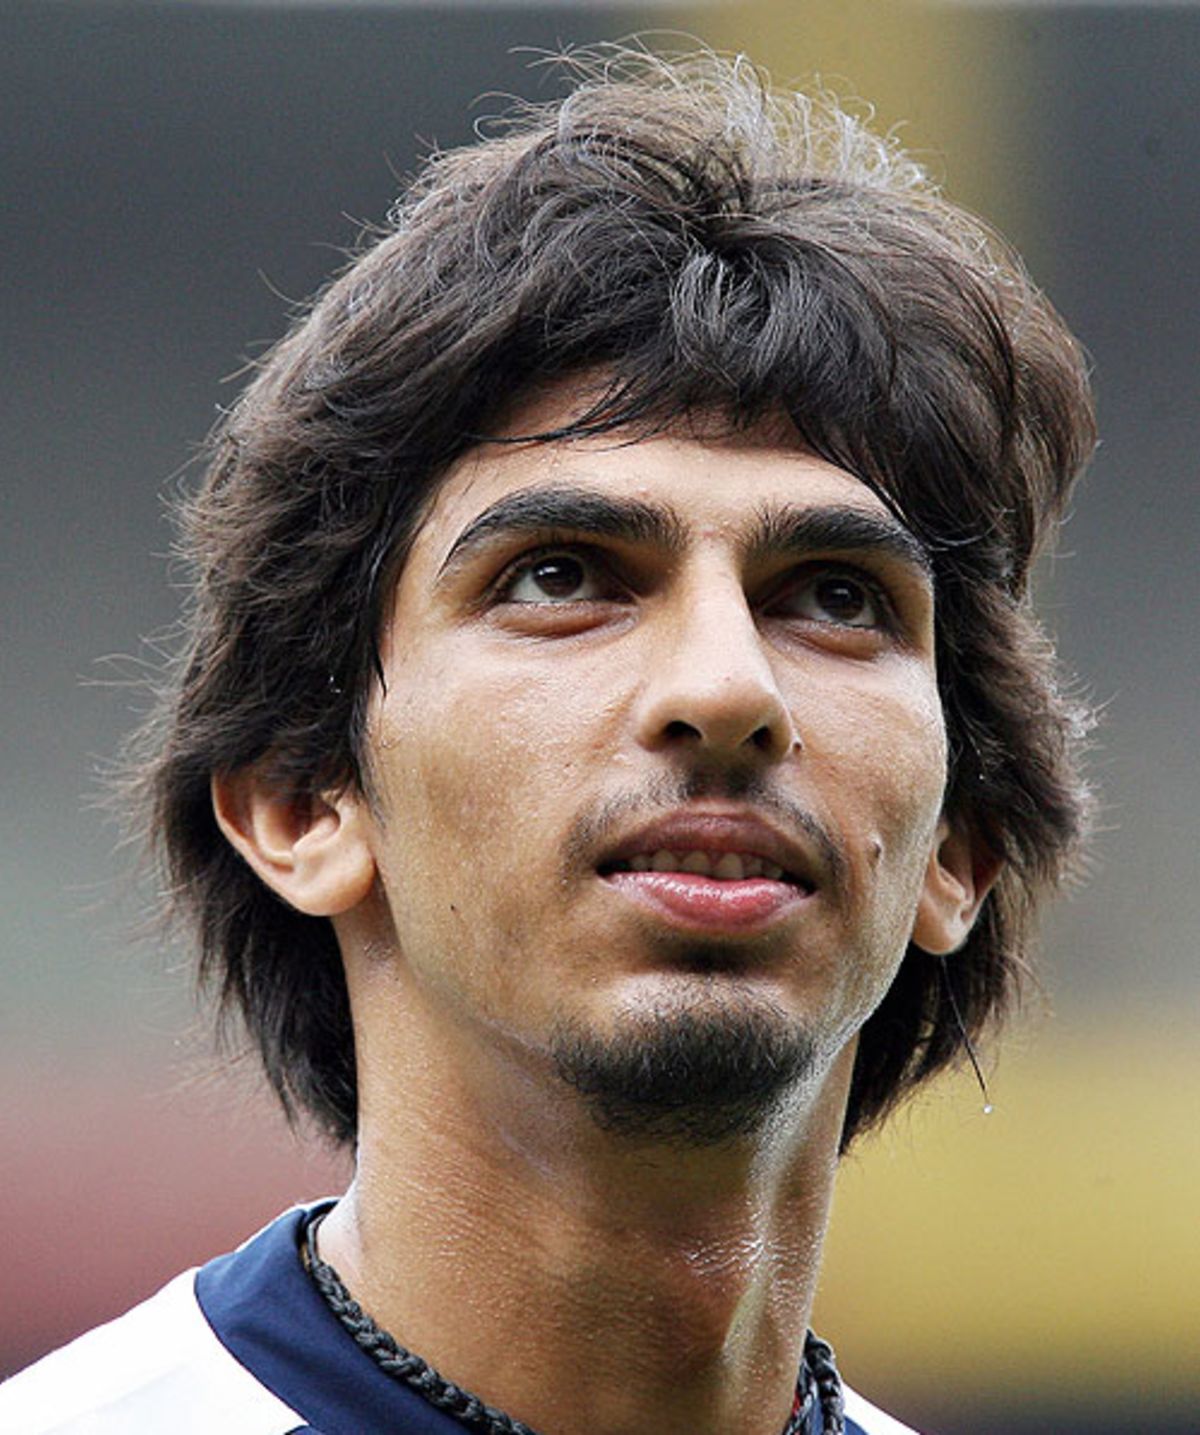 Ishant Sharma shows off his new haircut, Bangalore, November 23, 2008